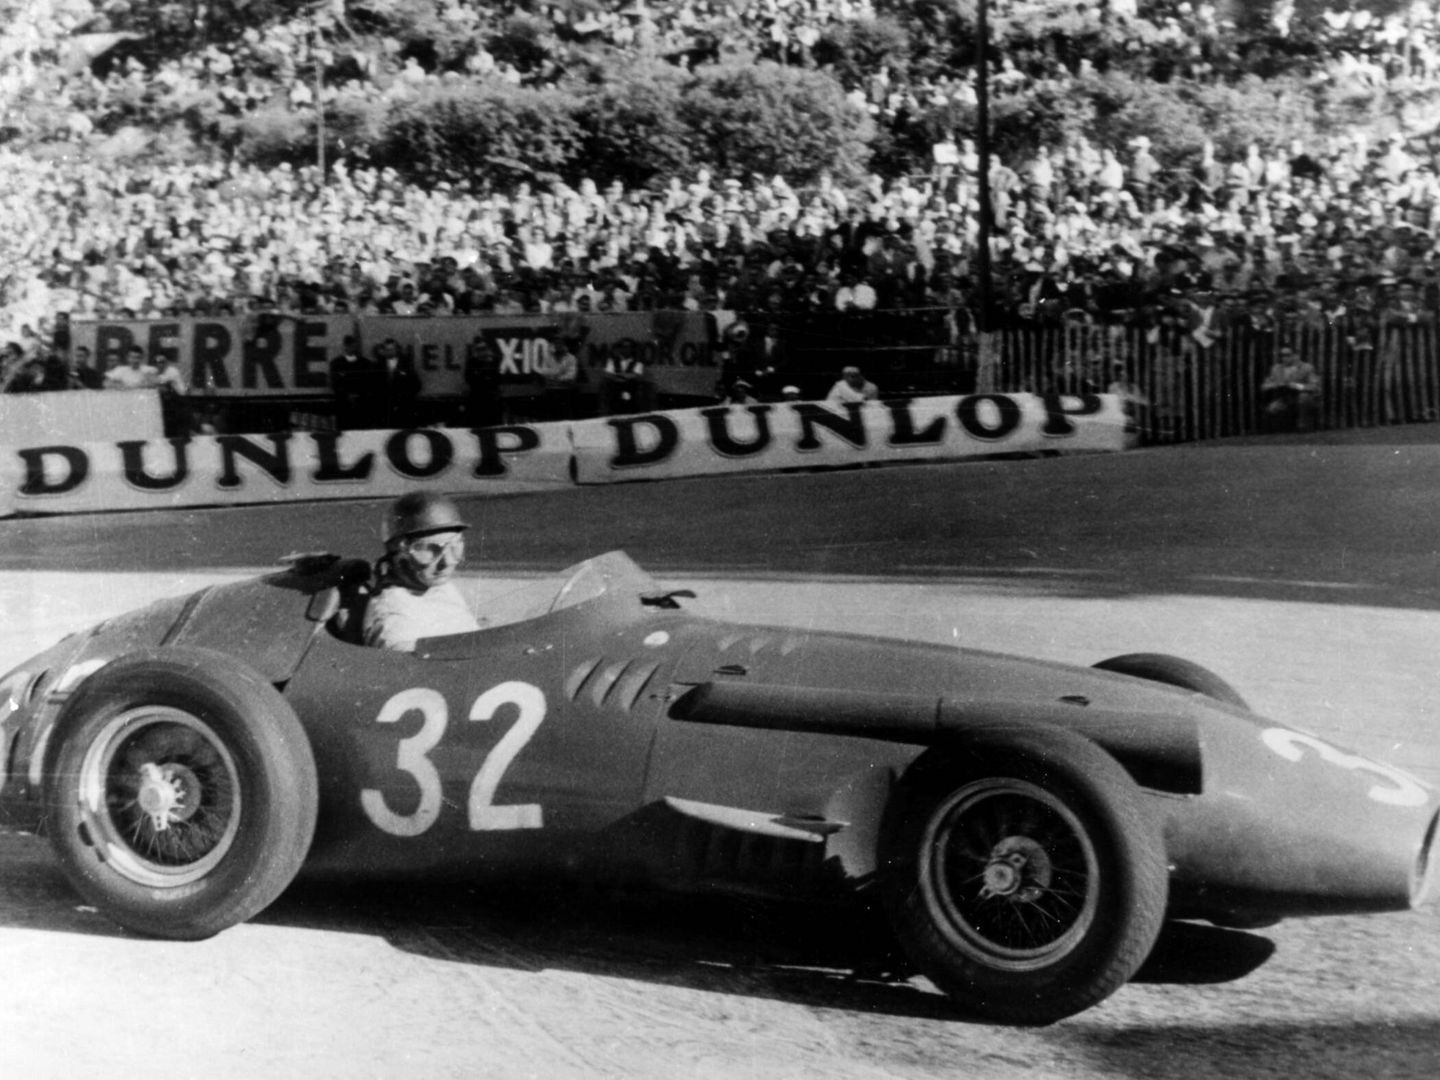 Después del secuestro de Cuba, Fangio se replanteó muchas cosas y sólo corrió una carrera más de Fórmula 1 en Reims y decidió retirarse. (Archivo Maserati)